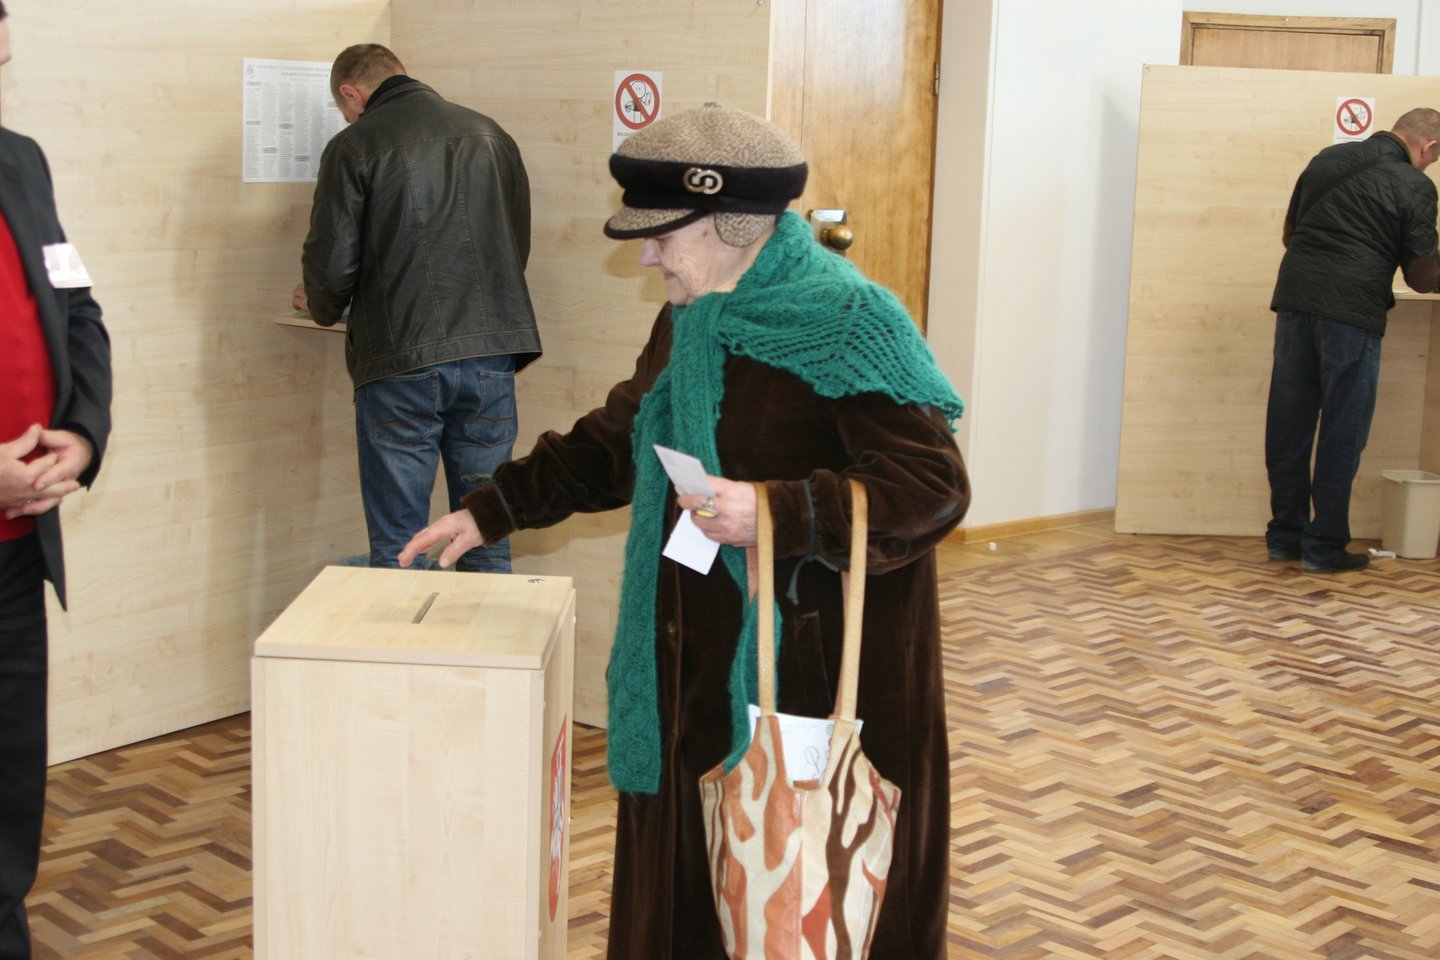  Pirmąją išankstinio balsavimo dieną savo nuomonę pareiškė keli šimtai marijampoliečių. <br> L.Juodzevičienės nuotr.